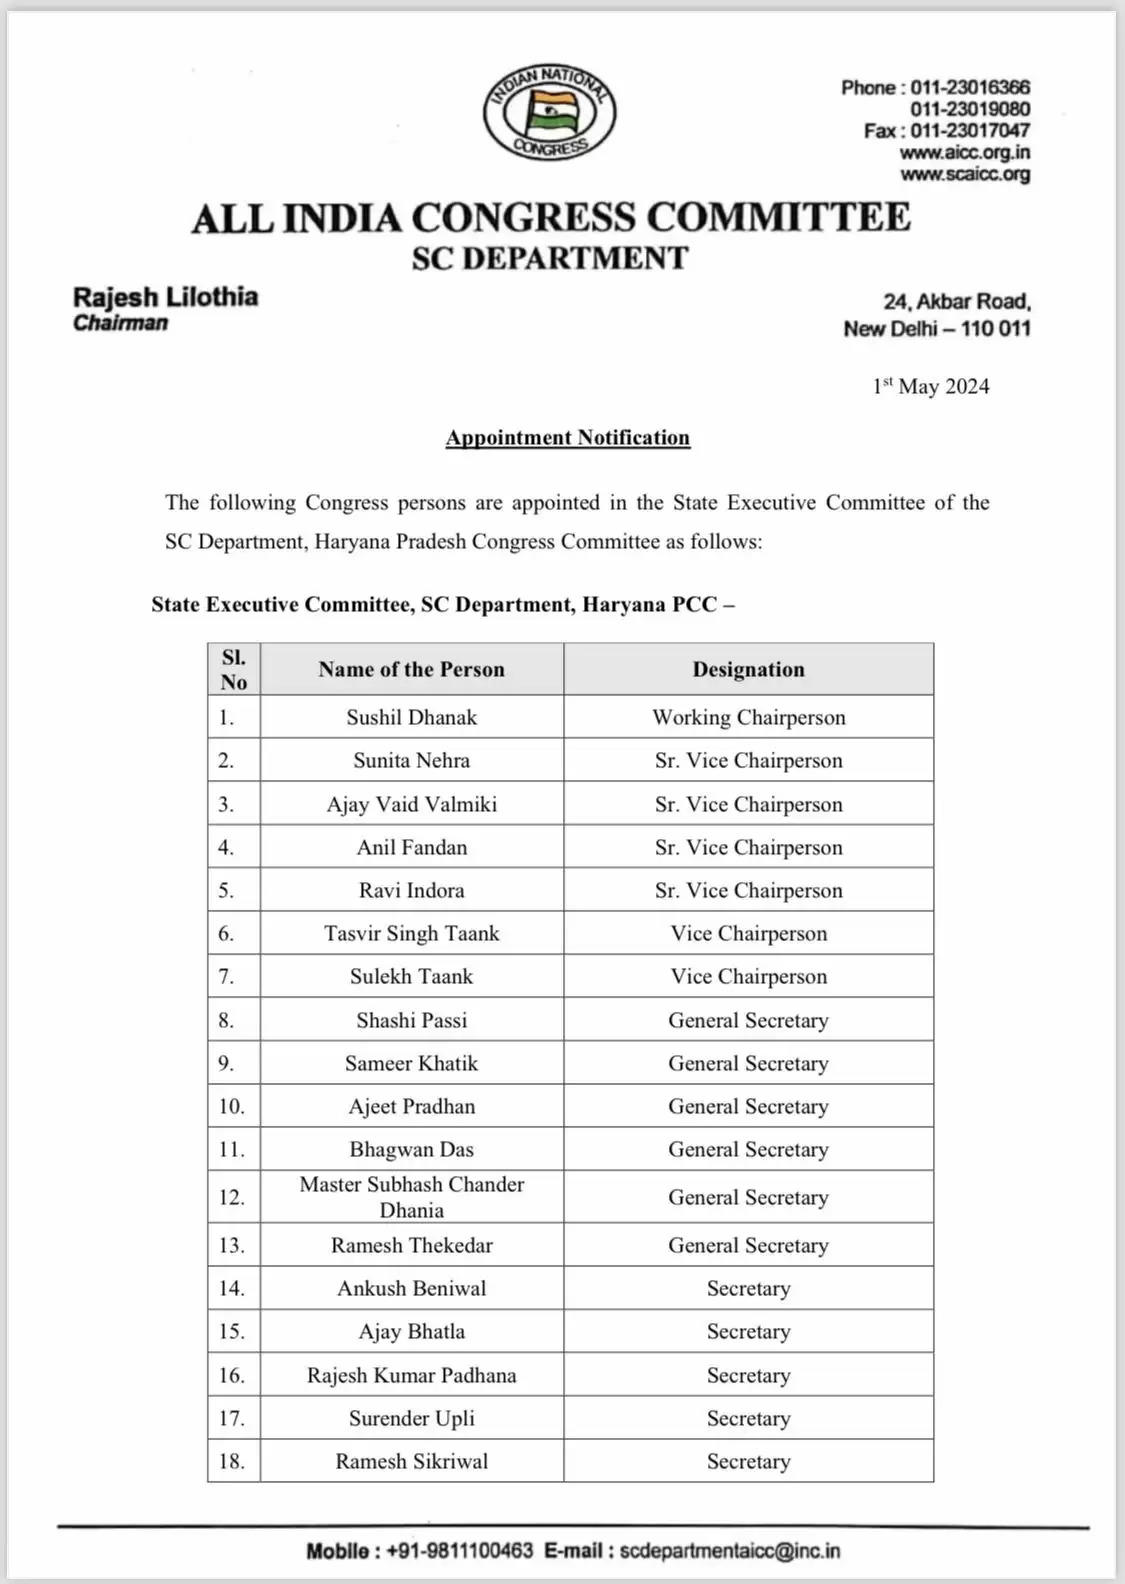 Haryana Congress List: हरियाणा कांग्रेस में आज अहम नियुक्तियां की गई है। हरियाणा प्रदेश कांग्रेस अनुसूचित जाति विभाग के नियुक्त वर्किंग चेयरमैन बनाए गए हैं, वहीं कई अन्य पदाधिकारी भी नियुक्त किए गए हैं।  देखिये लिस्ट